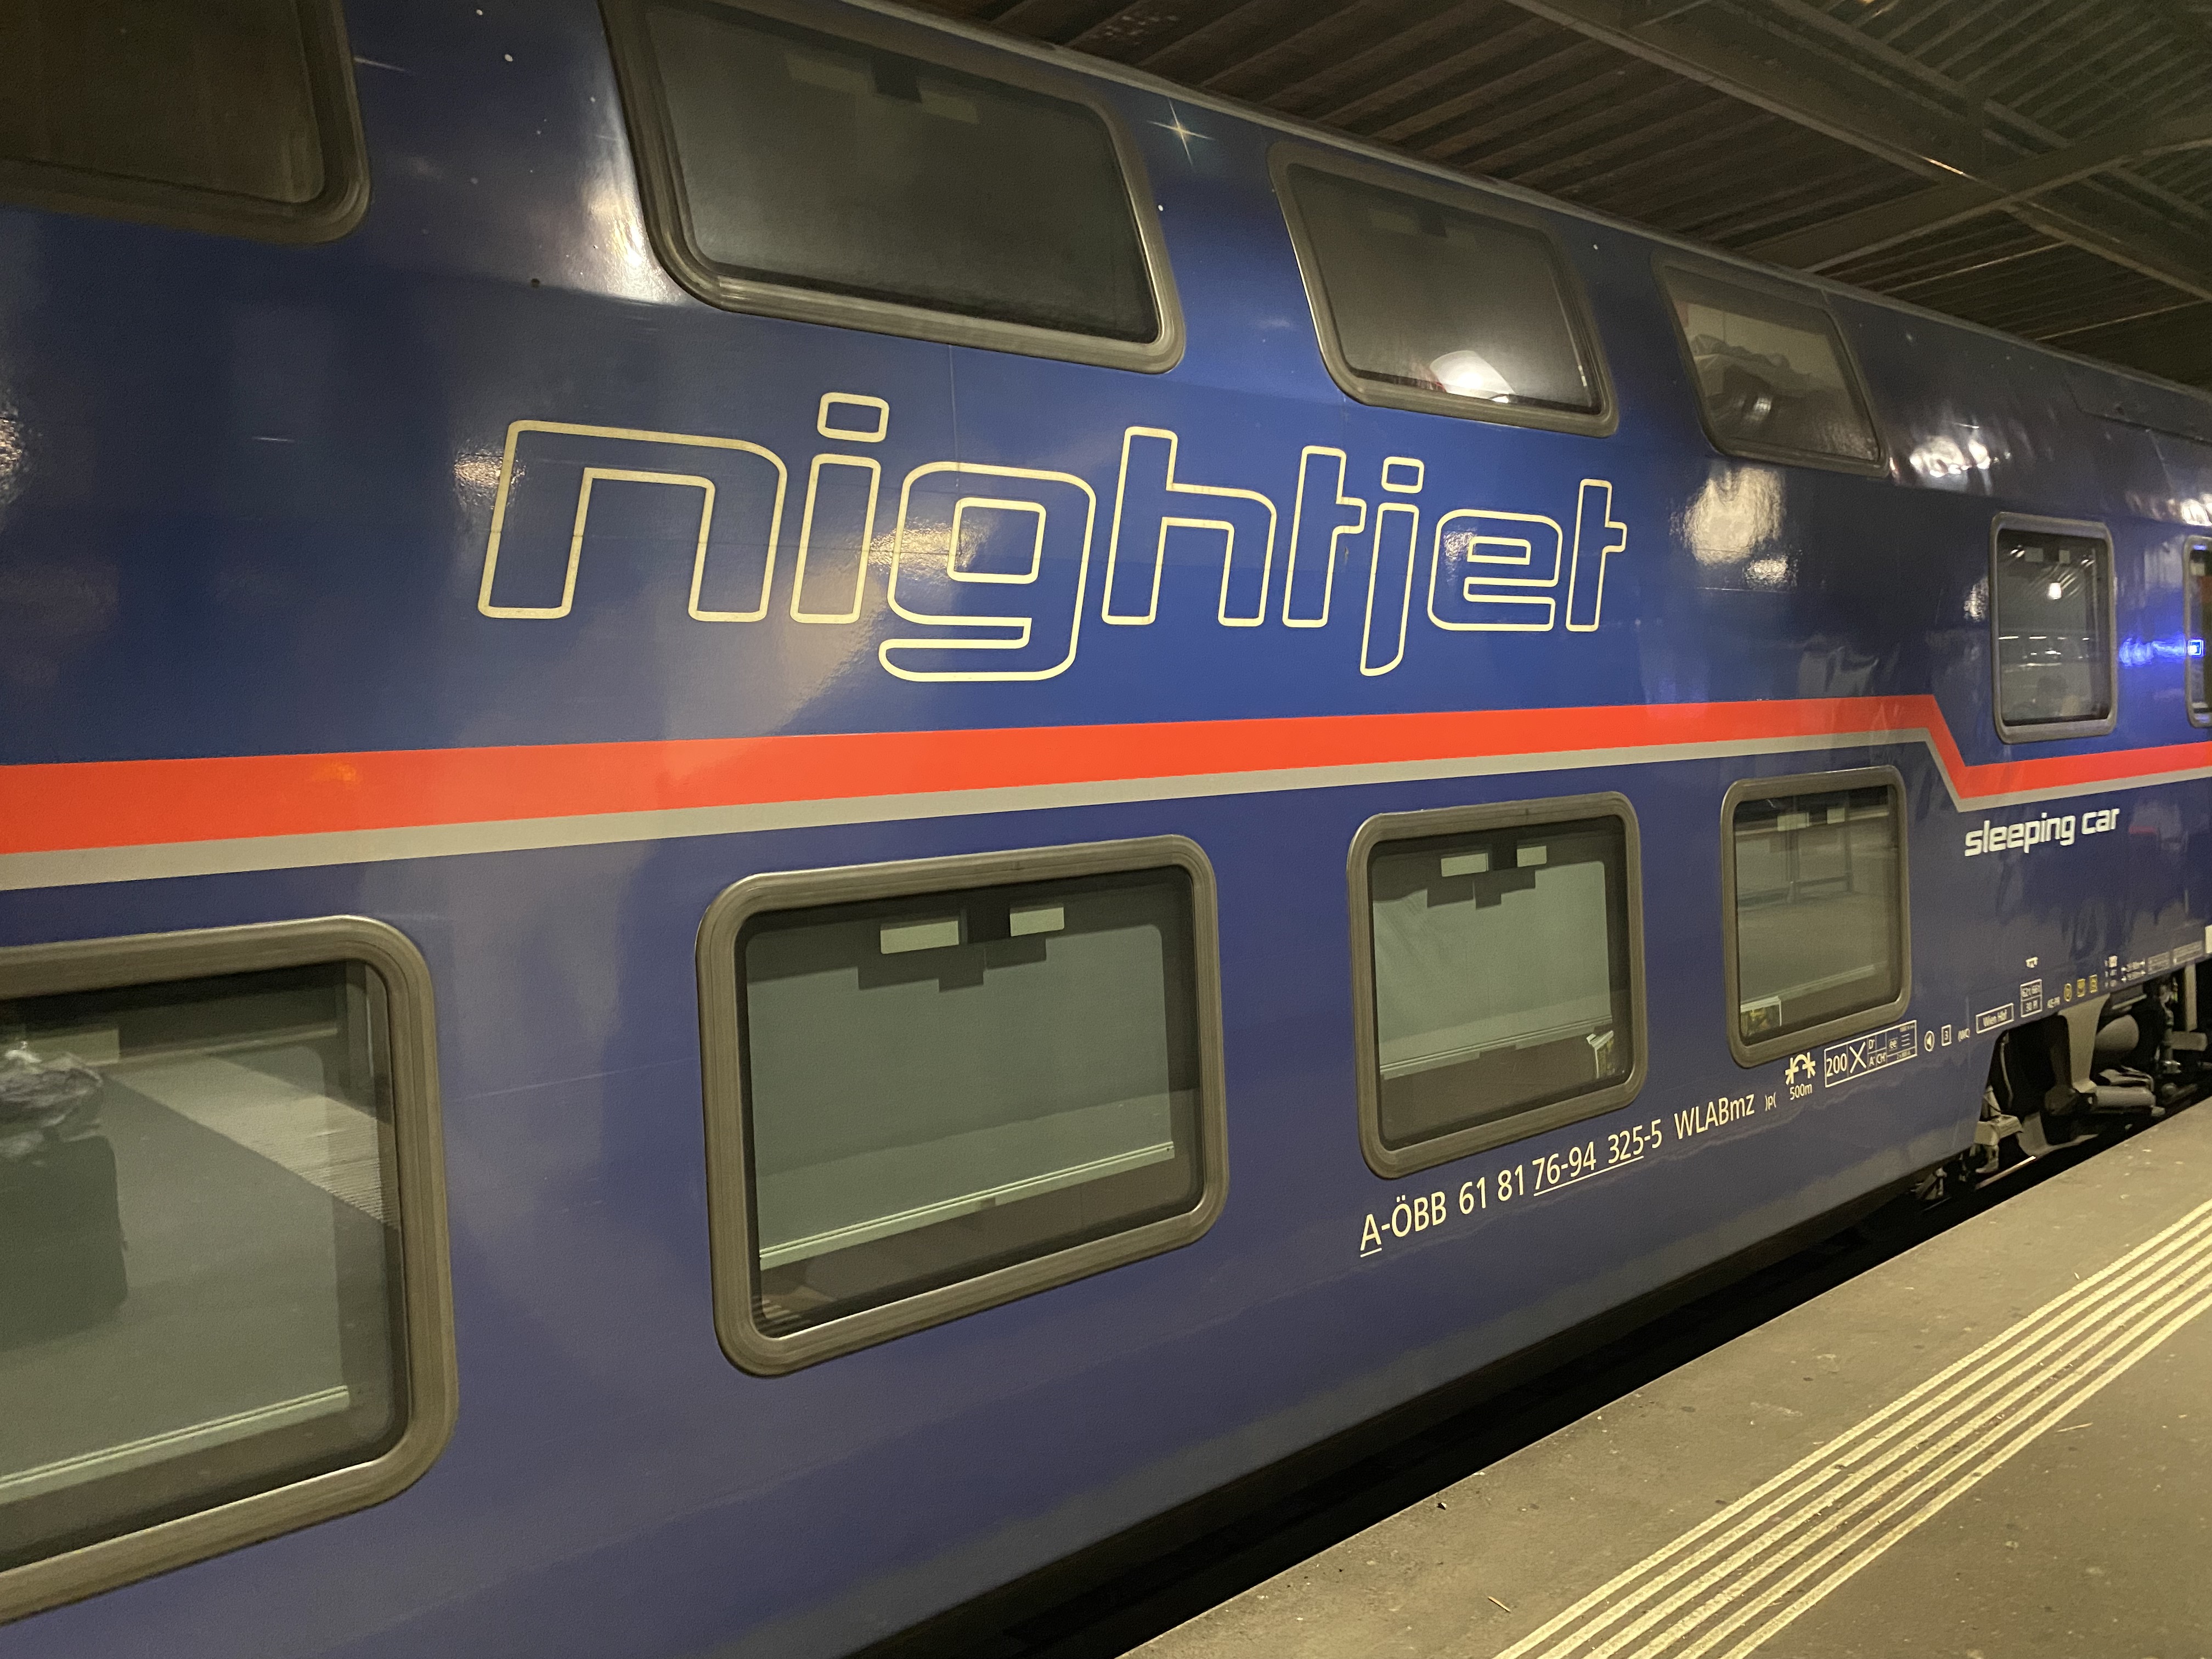 		Mit dem Nachtzug durch Europa – OBB Nightjet
	